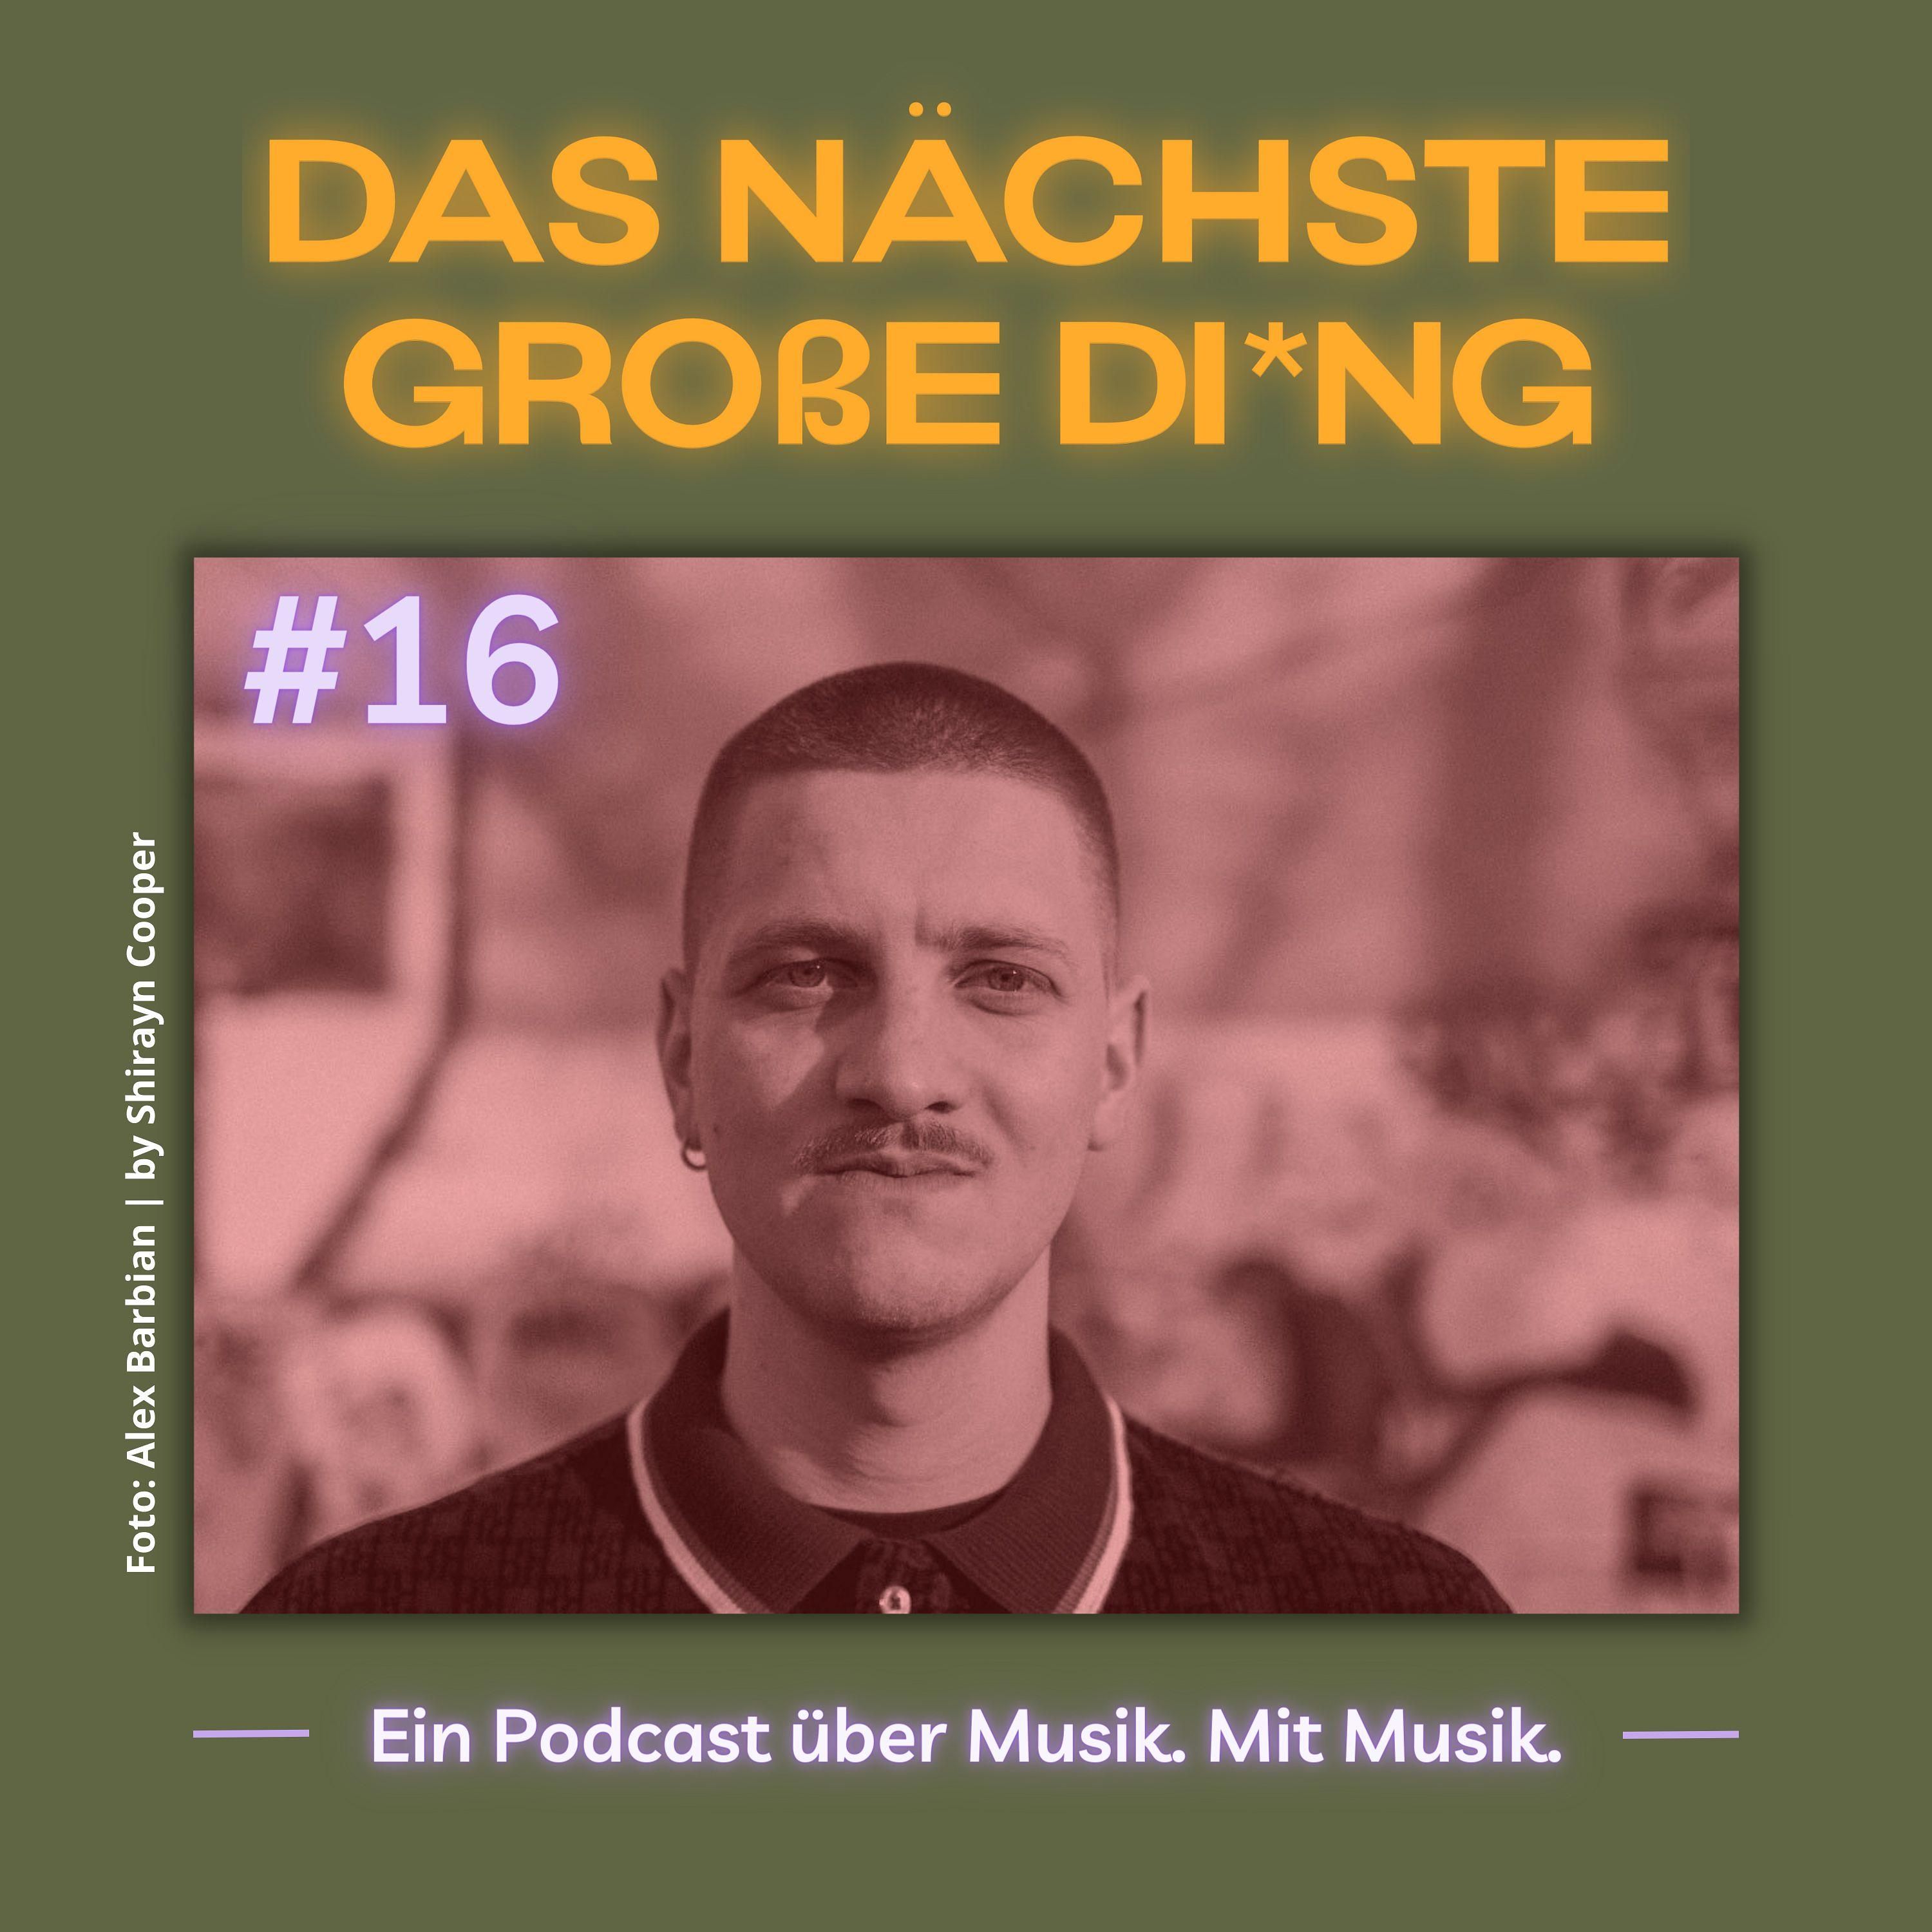 Ab in die Tonne Podcast Download ~ Podcast von Eure Tonnenjungs: Robert,  Jan, Daniel, Max, Moritz und Mario ~ podcast 1809614